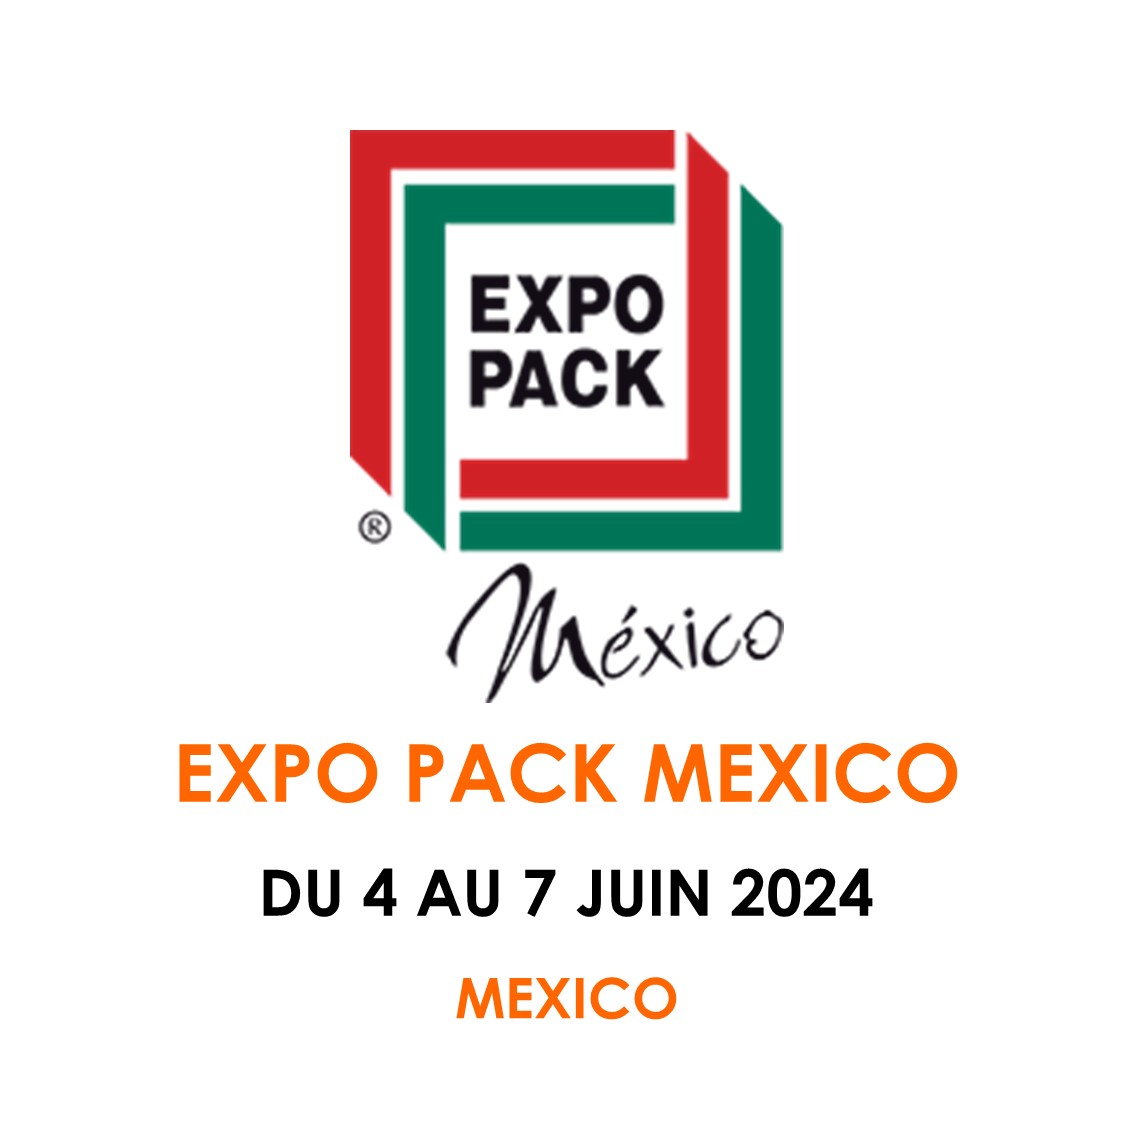 EXPO PACK México DU 4 AU 7 JUIN 2024 TCM Solutions